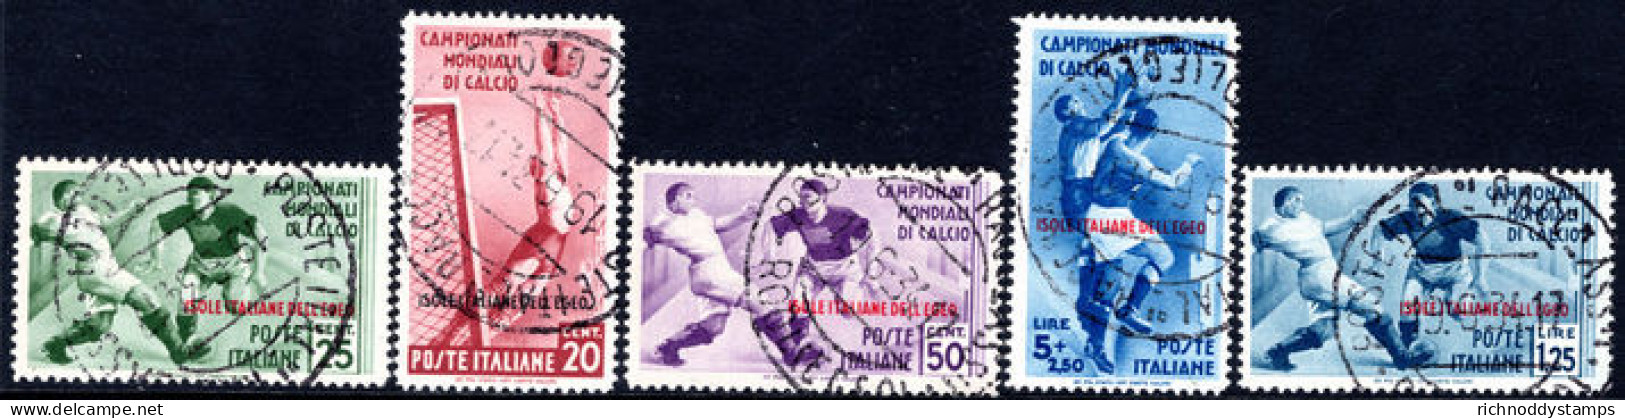 Dodecanese Islands 1934 Football Regular Set Fine Used. - Aegean